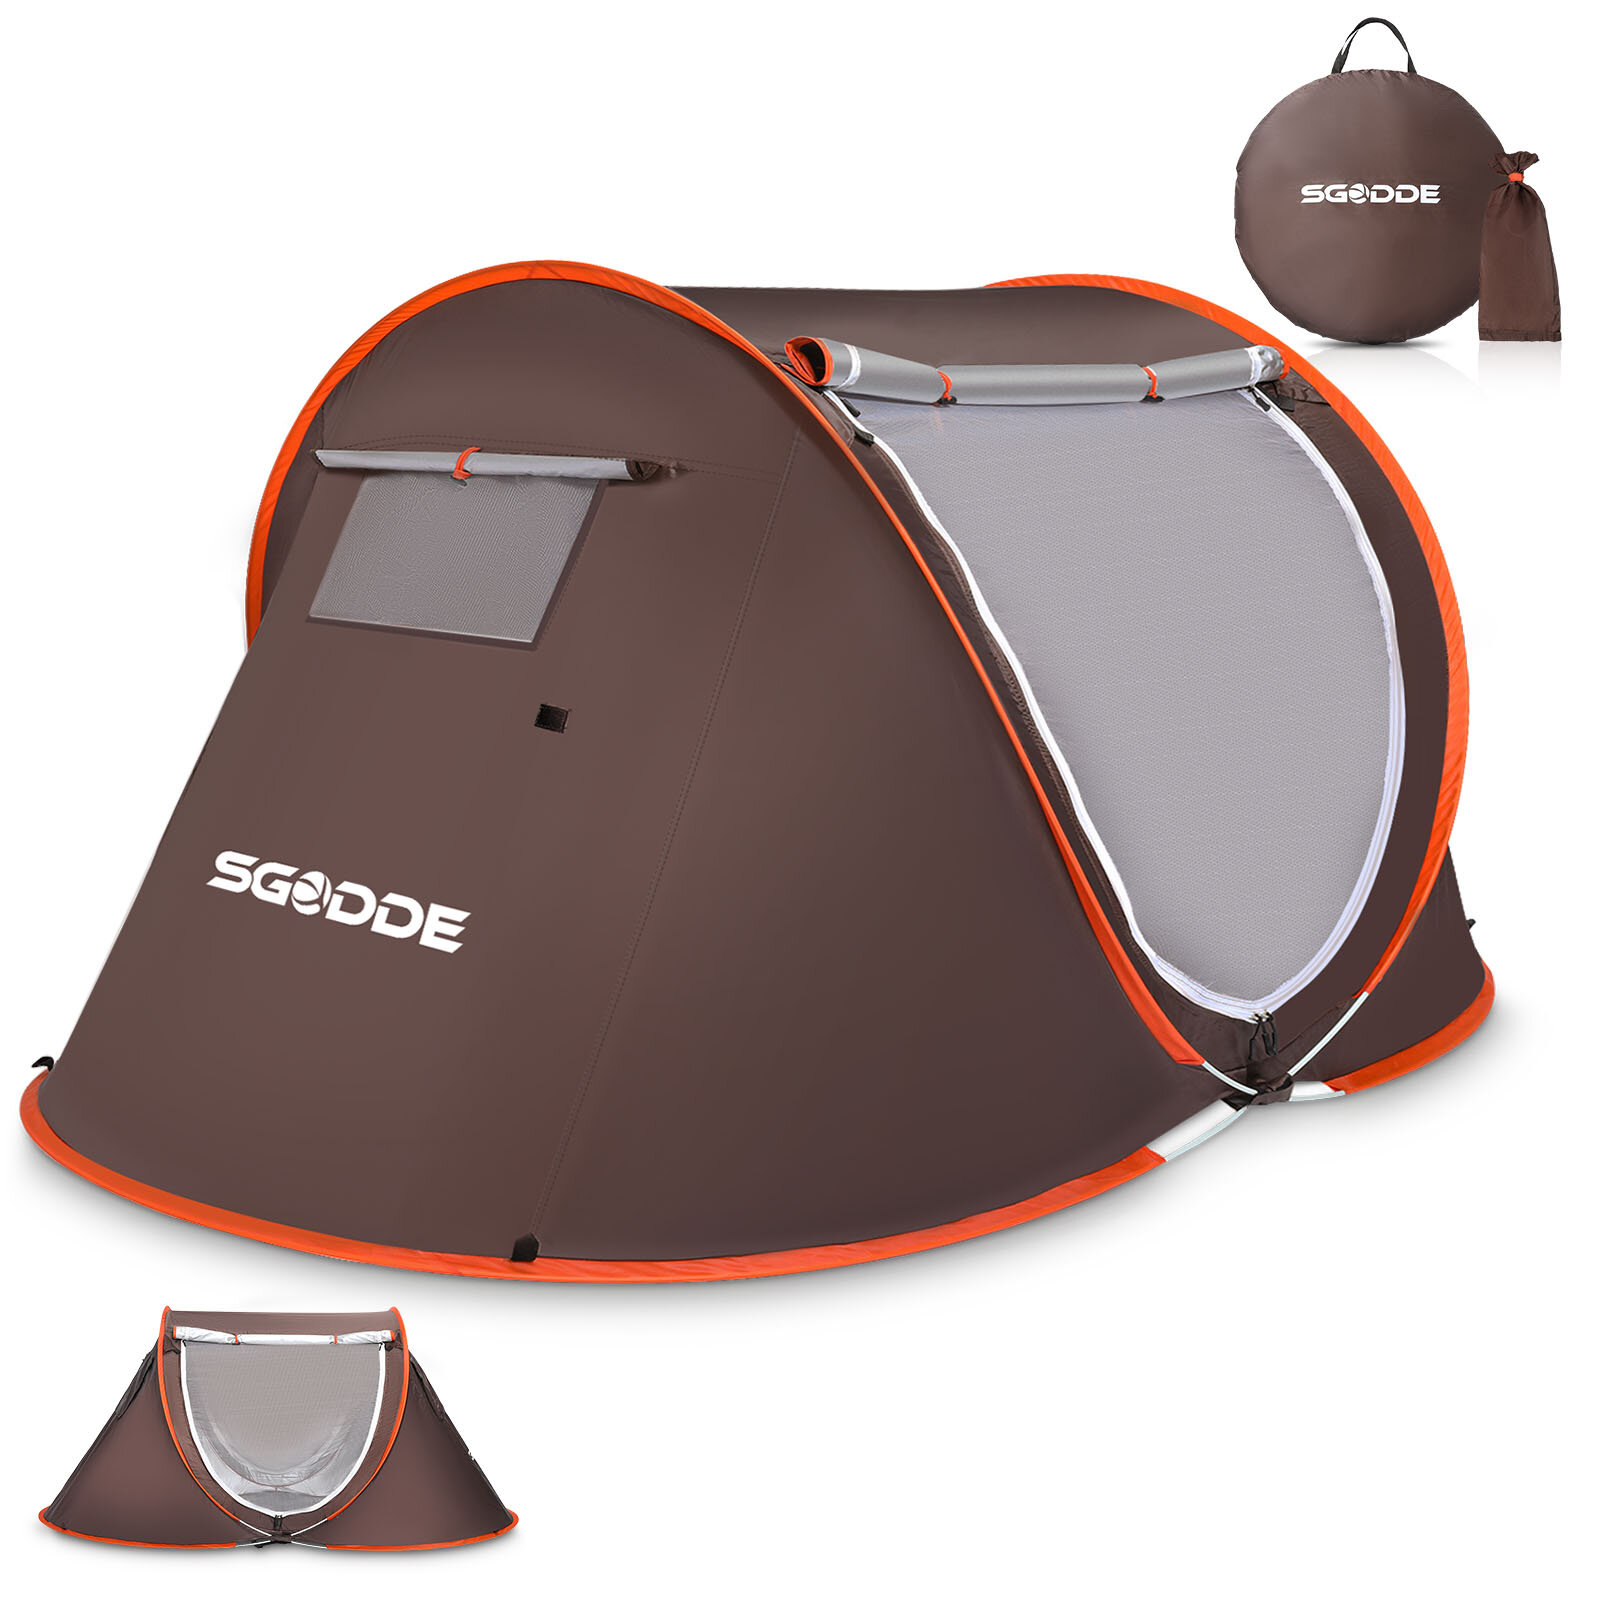 SGODDE 2-3人用テント 自動キャンプテント 抗UVオーニングテント 防水アウトドア日除け